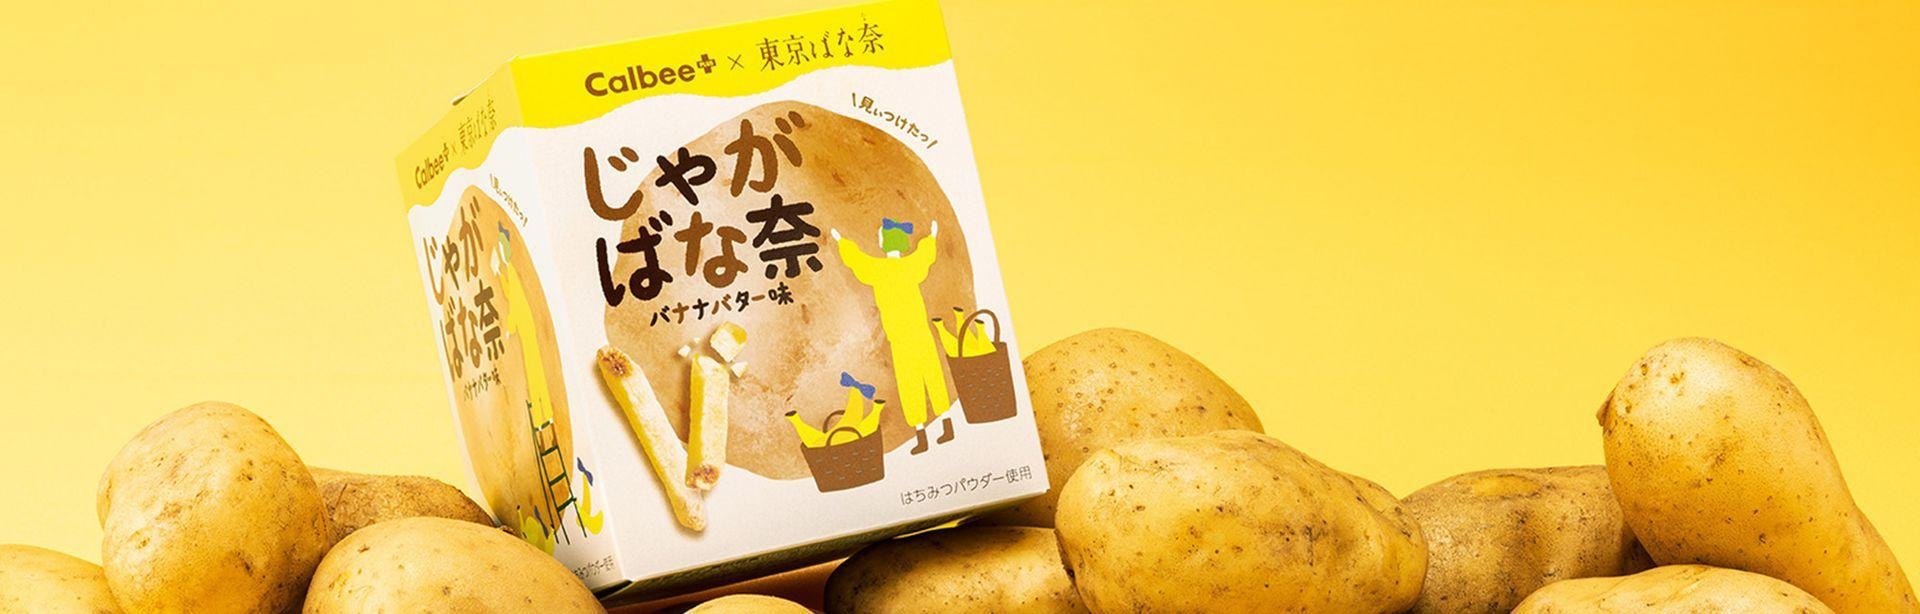 【日本北海道直邮】日本伴手礼首选 TOKYO BANANA东京香蕉蛋糕 Calbee卡乐比联名 香蕉芝士味 5袋入